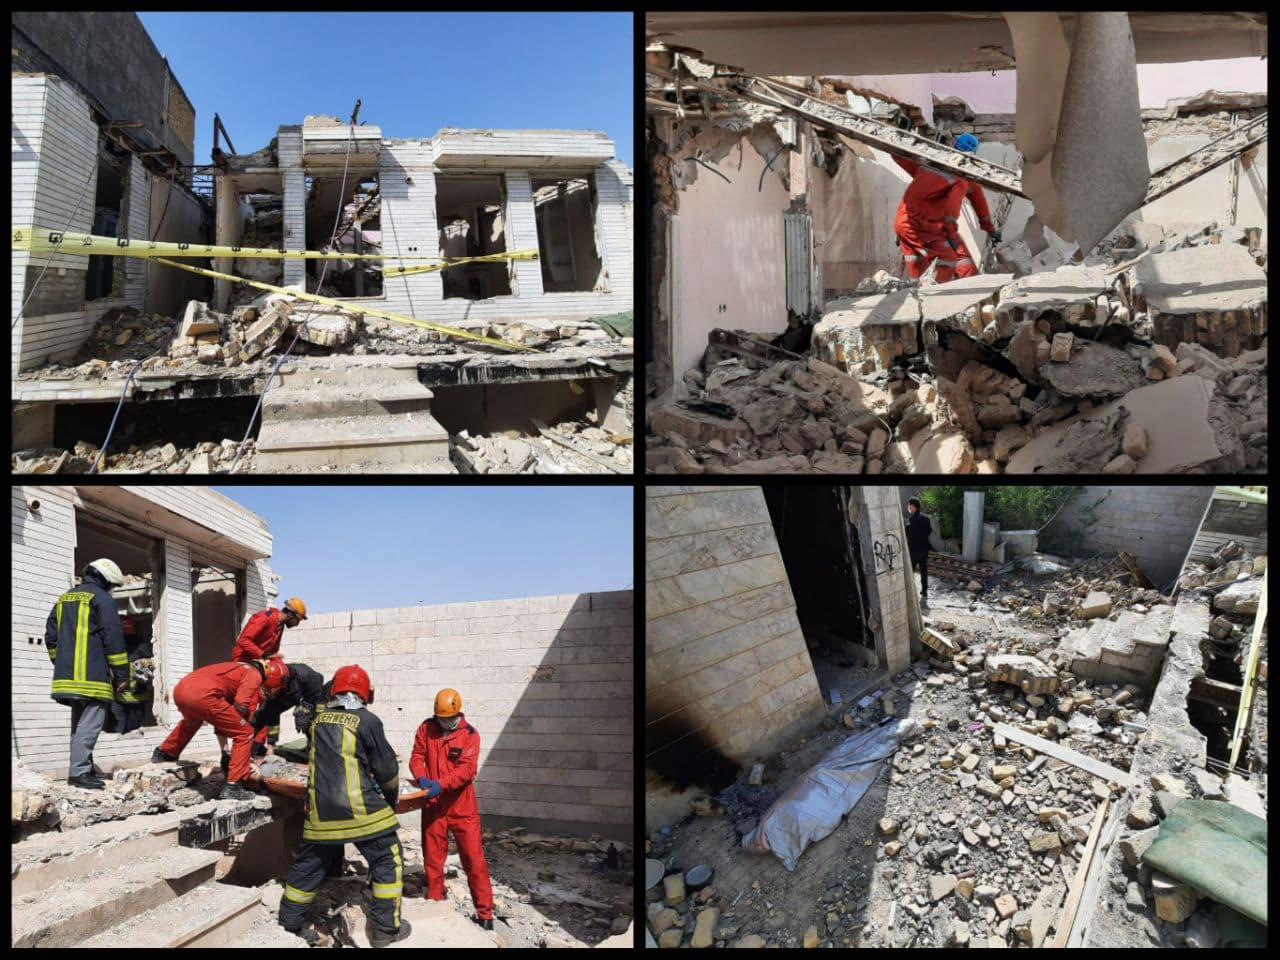 ۲ کشته و ۲ مجروح در حادثه ریزش ساختمان در حال تخریب در مشهد